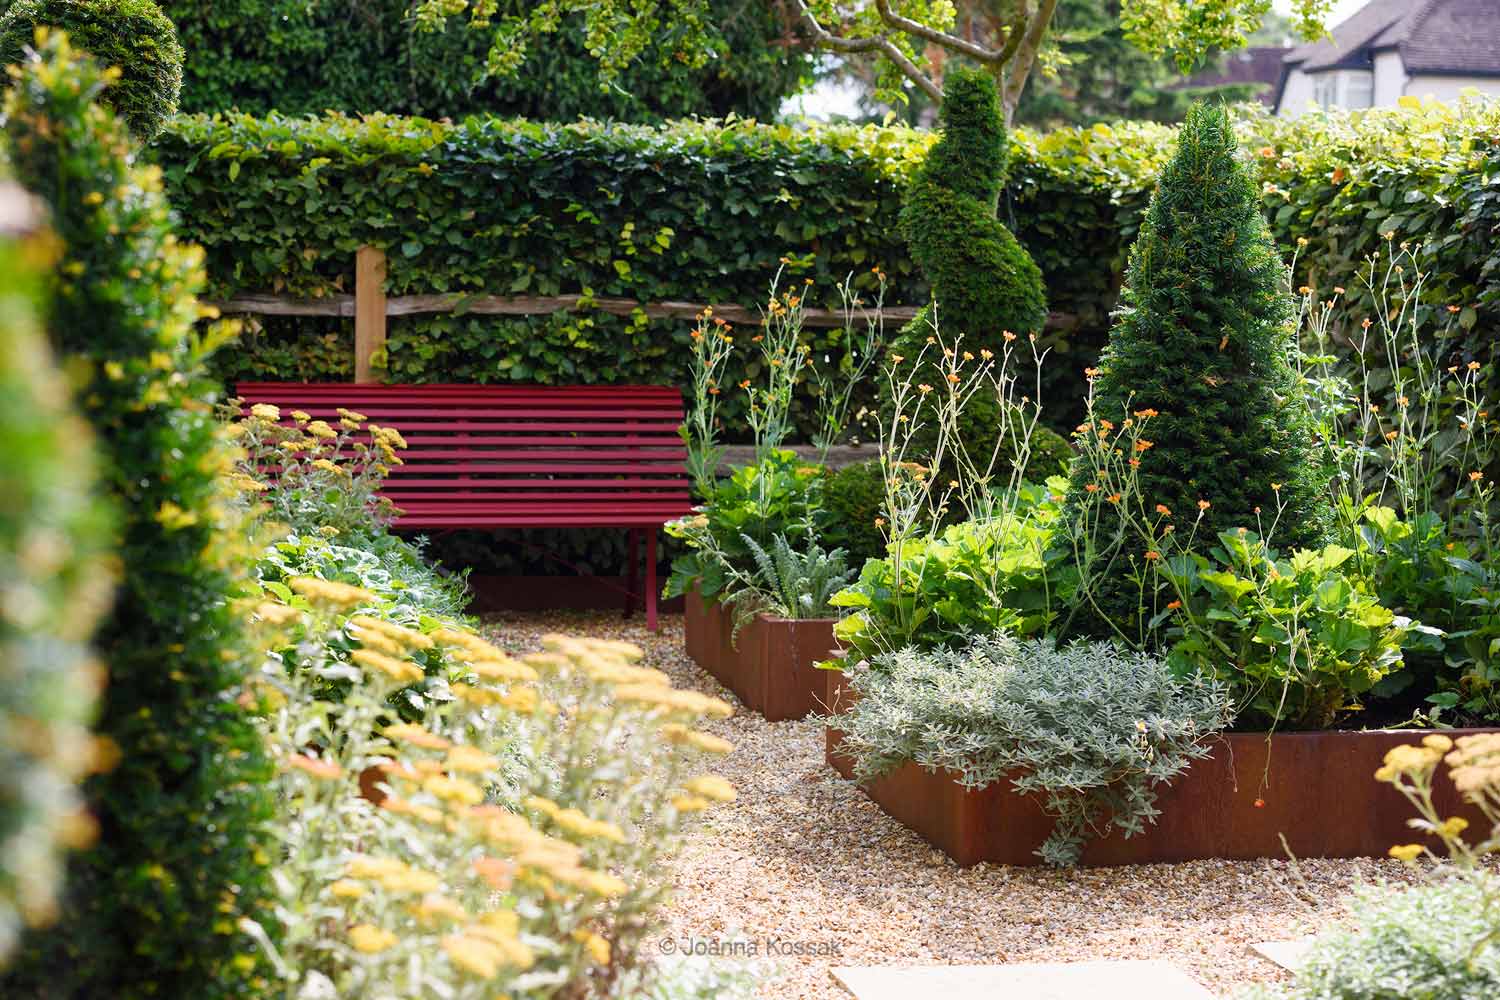 Weston Green Gravel Garden designed by Maïtanne Hunt